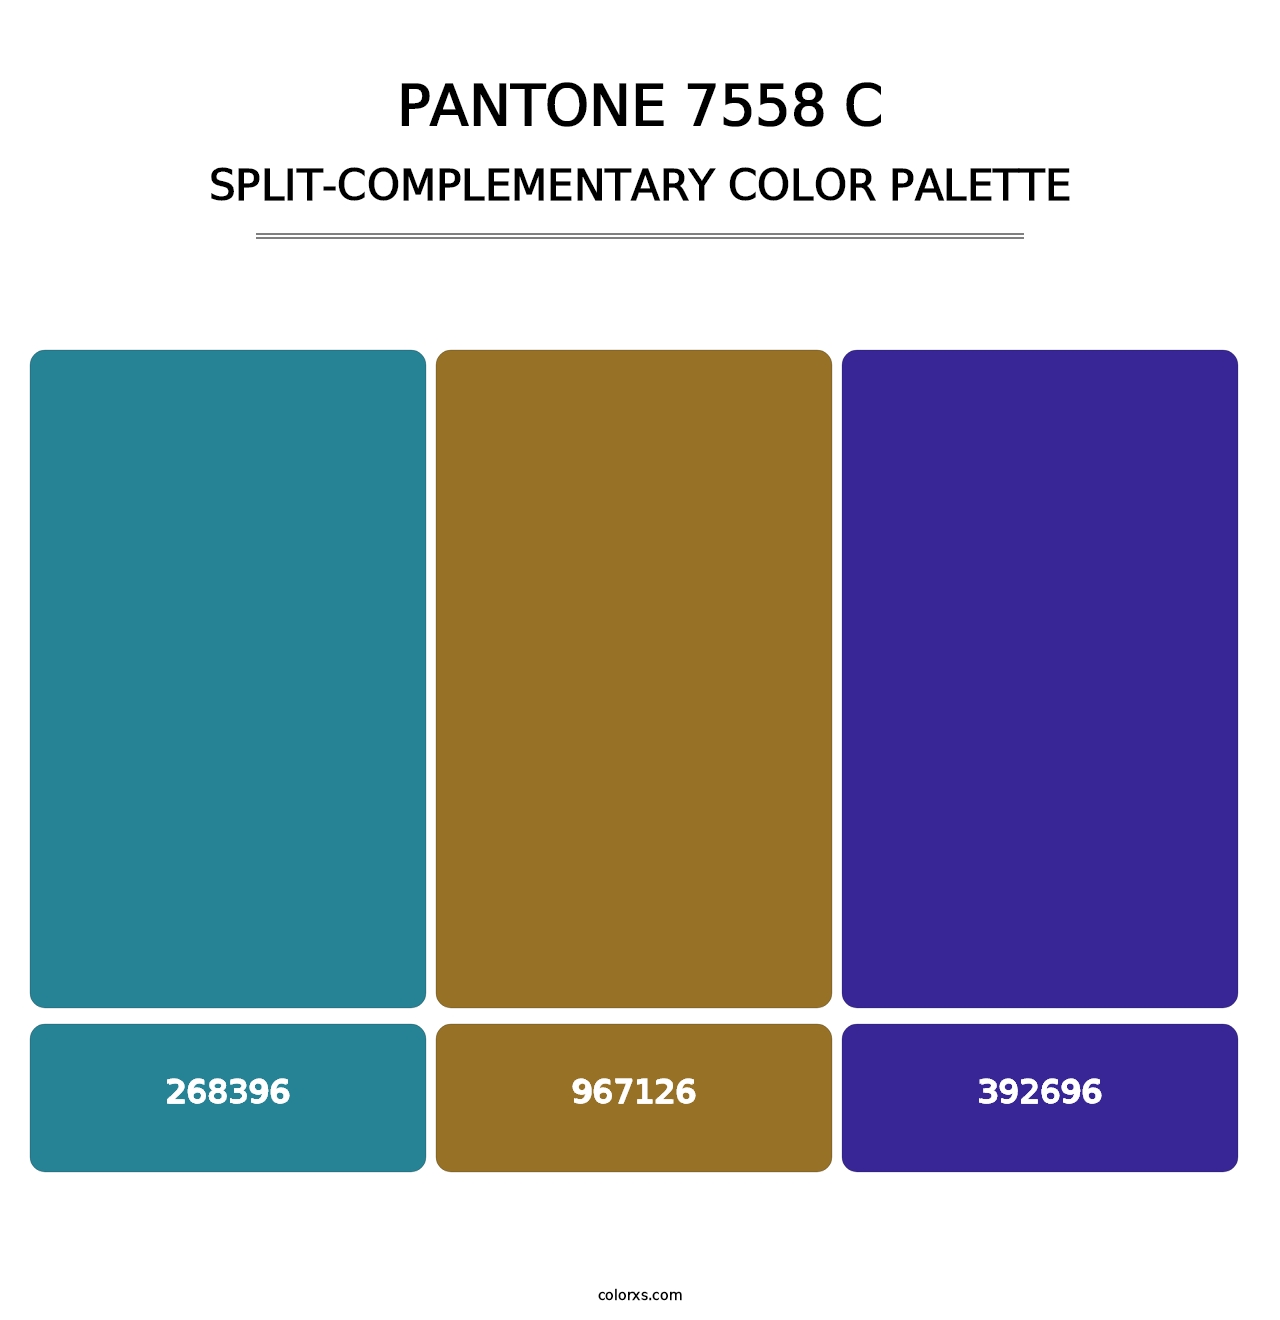 PANTONE 7558 C - Split-Complementary Color Palette